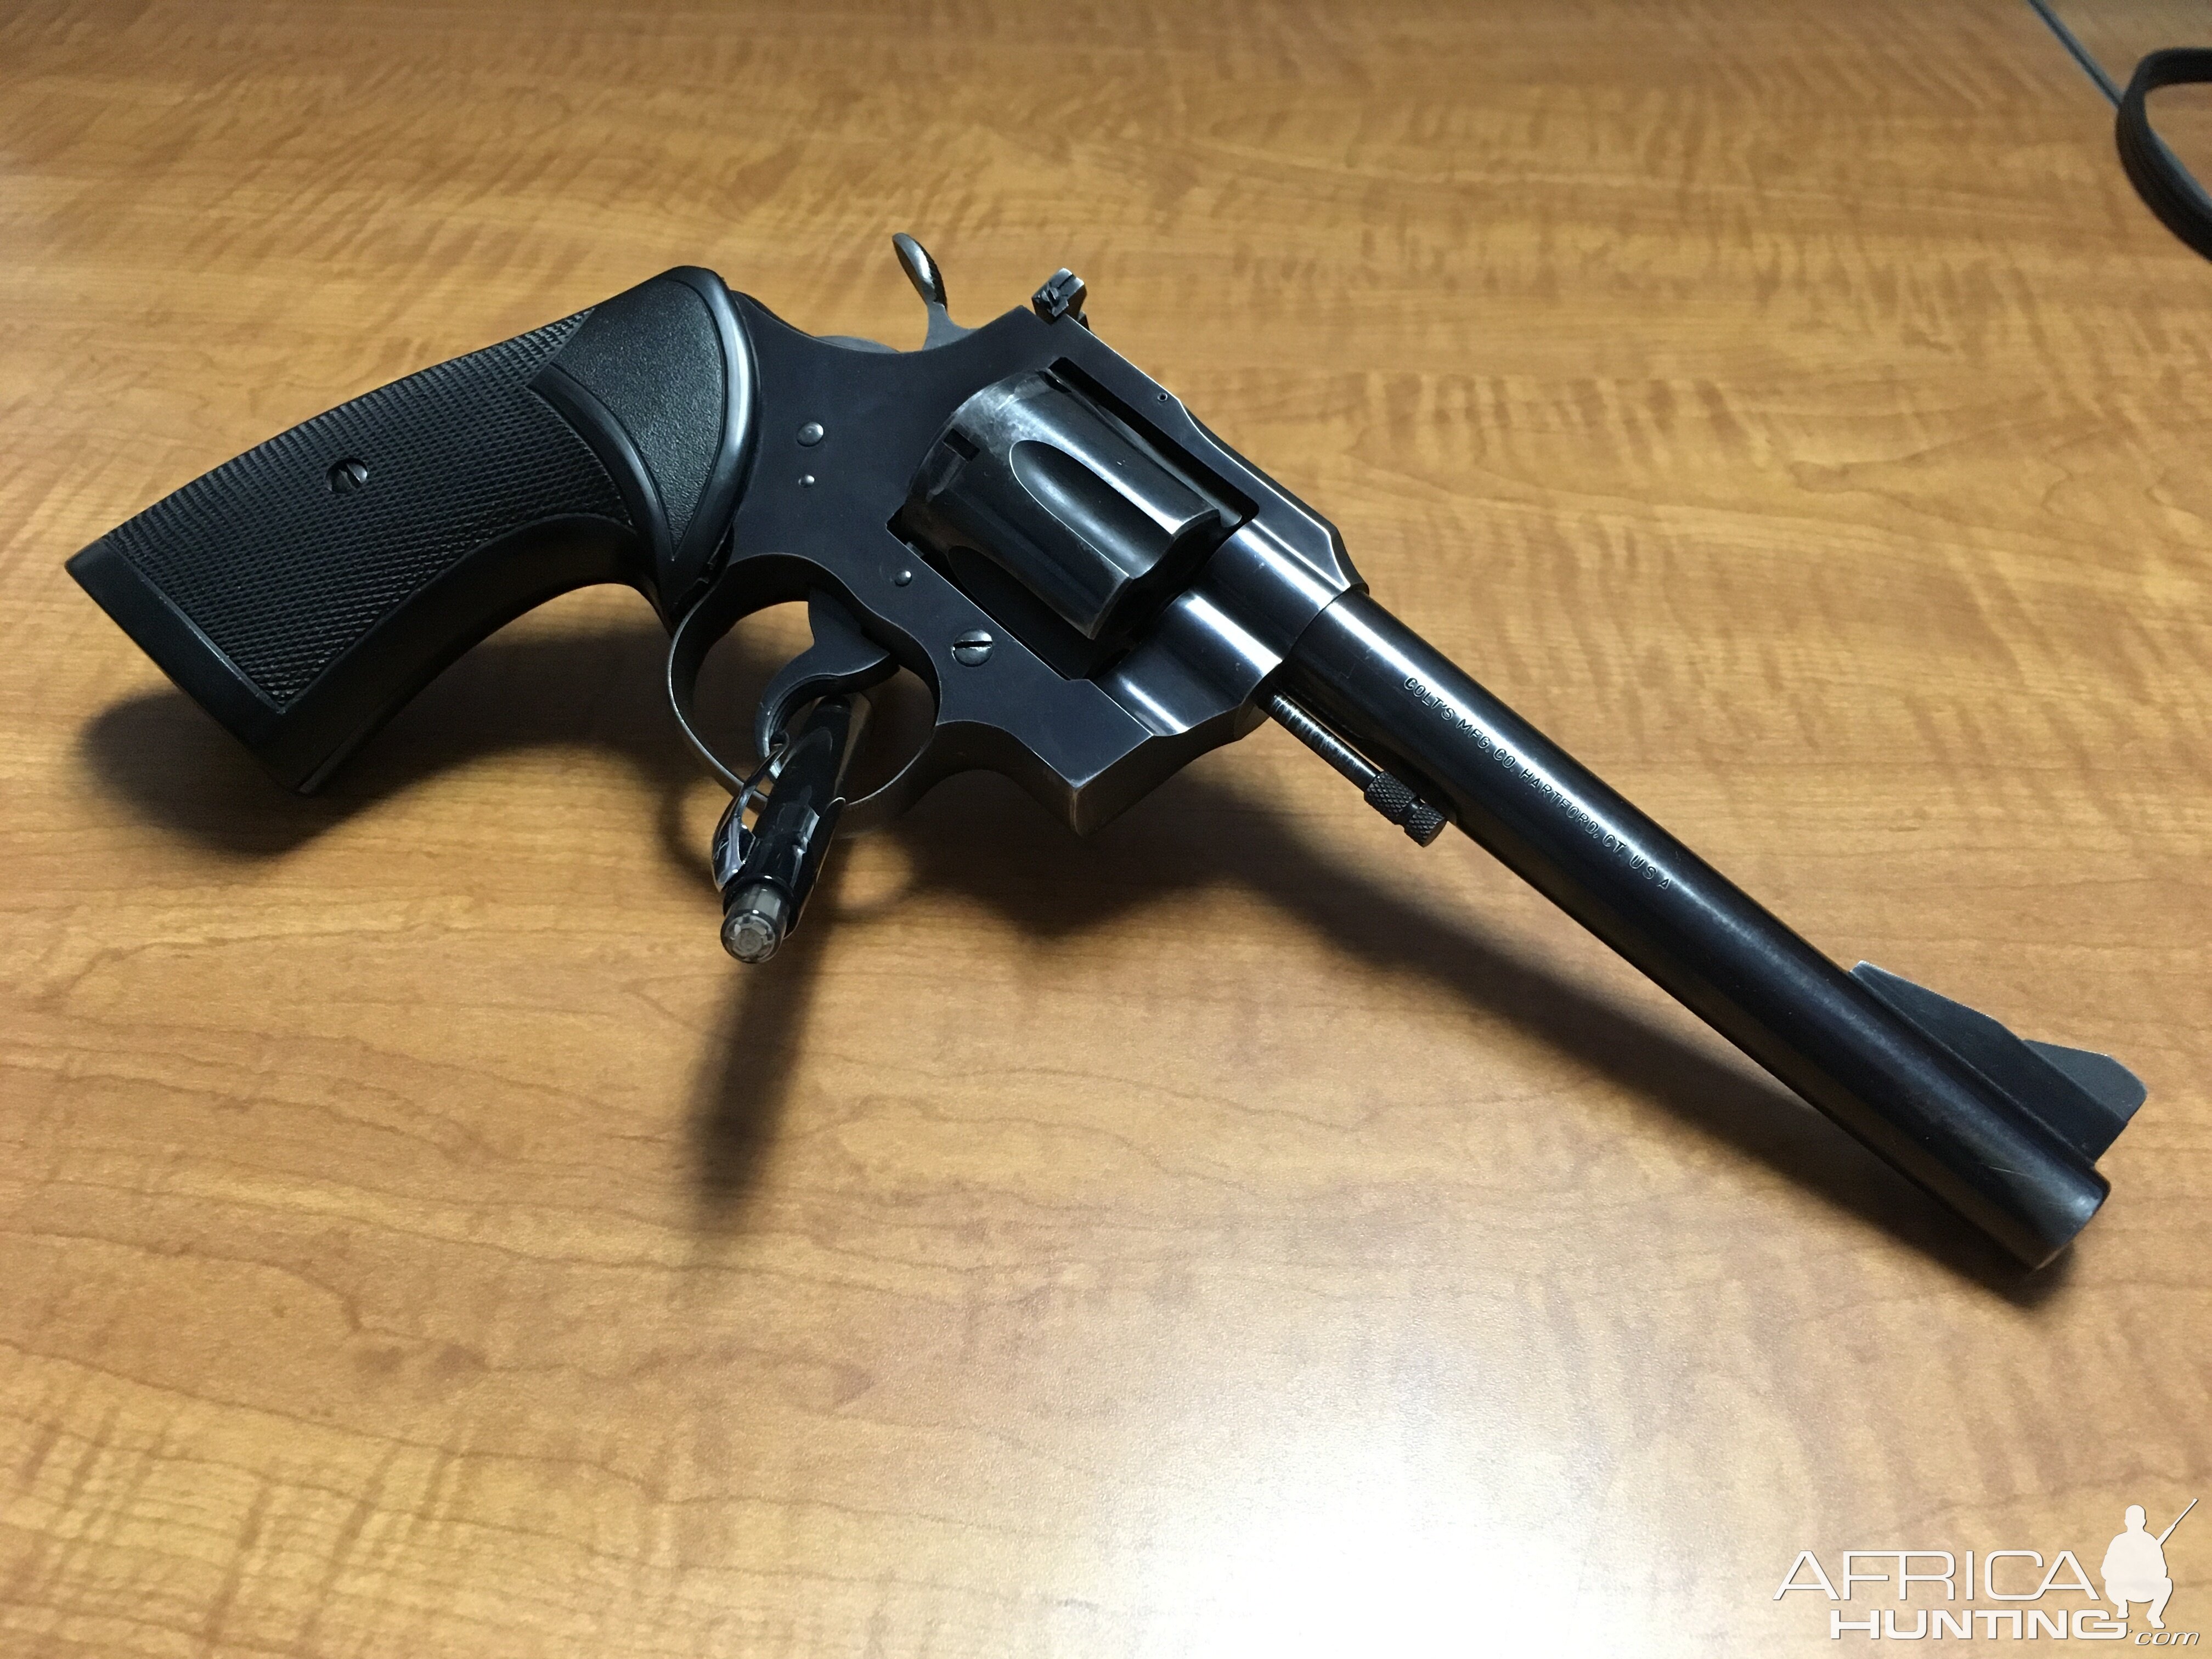 Colt 357 Magnum Revolver